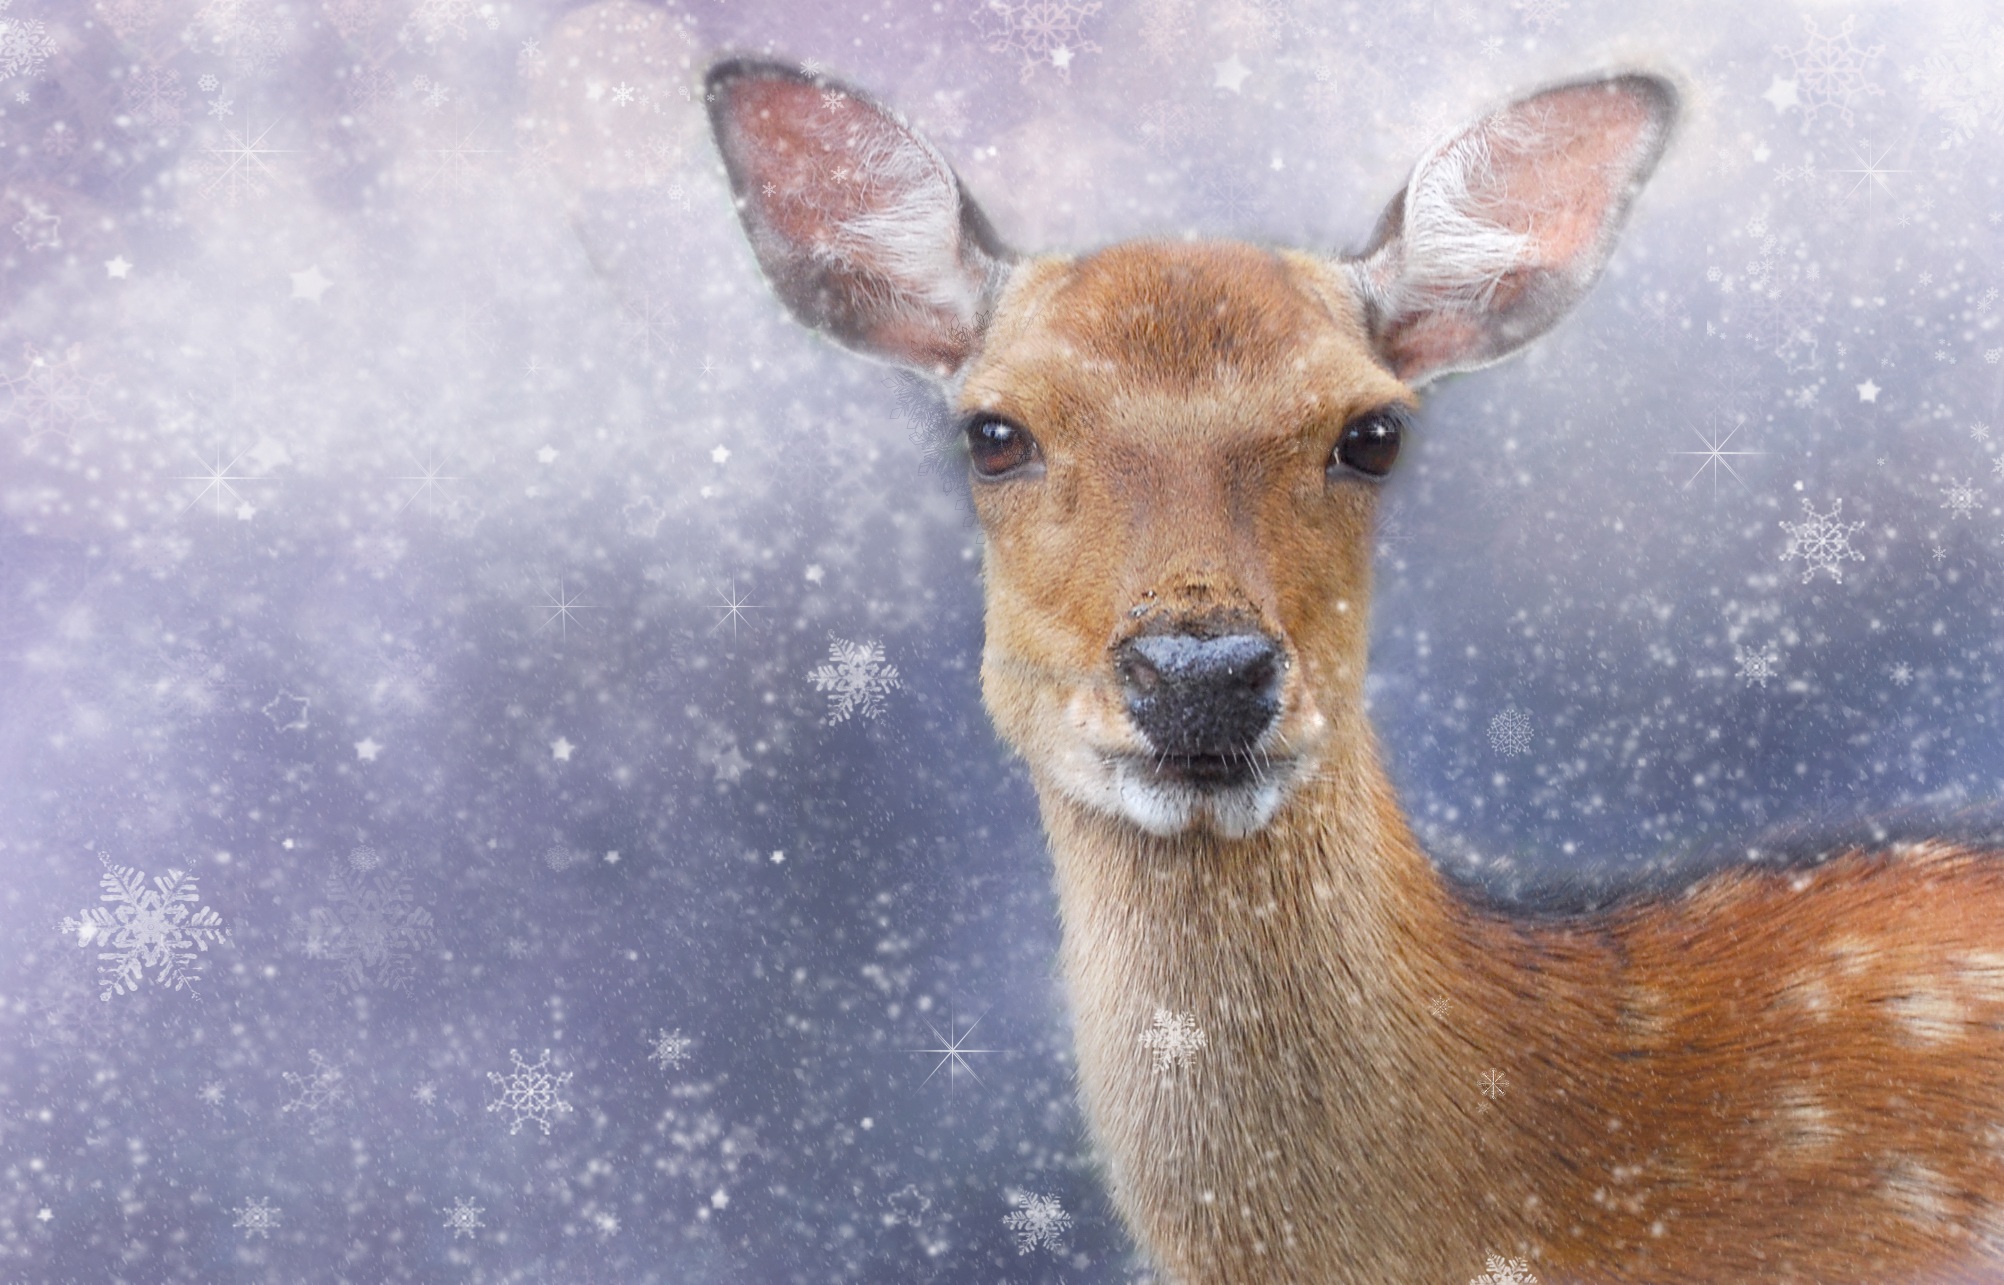 Фото снег, холодный, зима, животное, дикая природа, олень, зоопарк, млекопитающее, рождество, фауна, позвоночные, косуля, лань, снежинки, белохвостый олень - бесплатные картинки на Fonwall